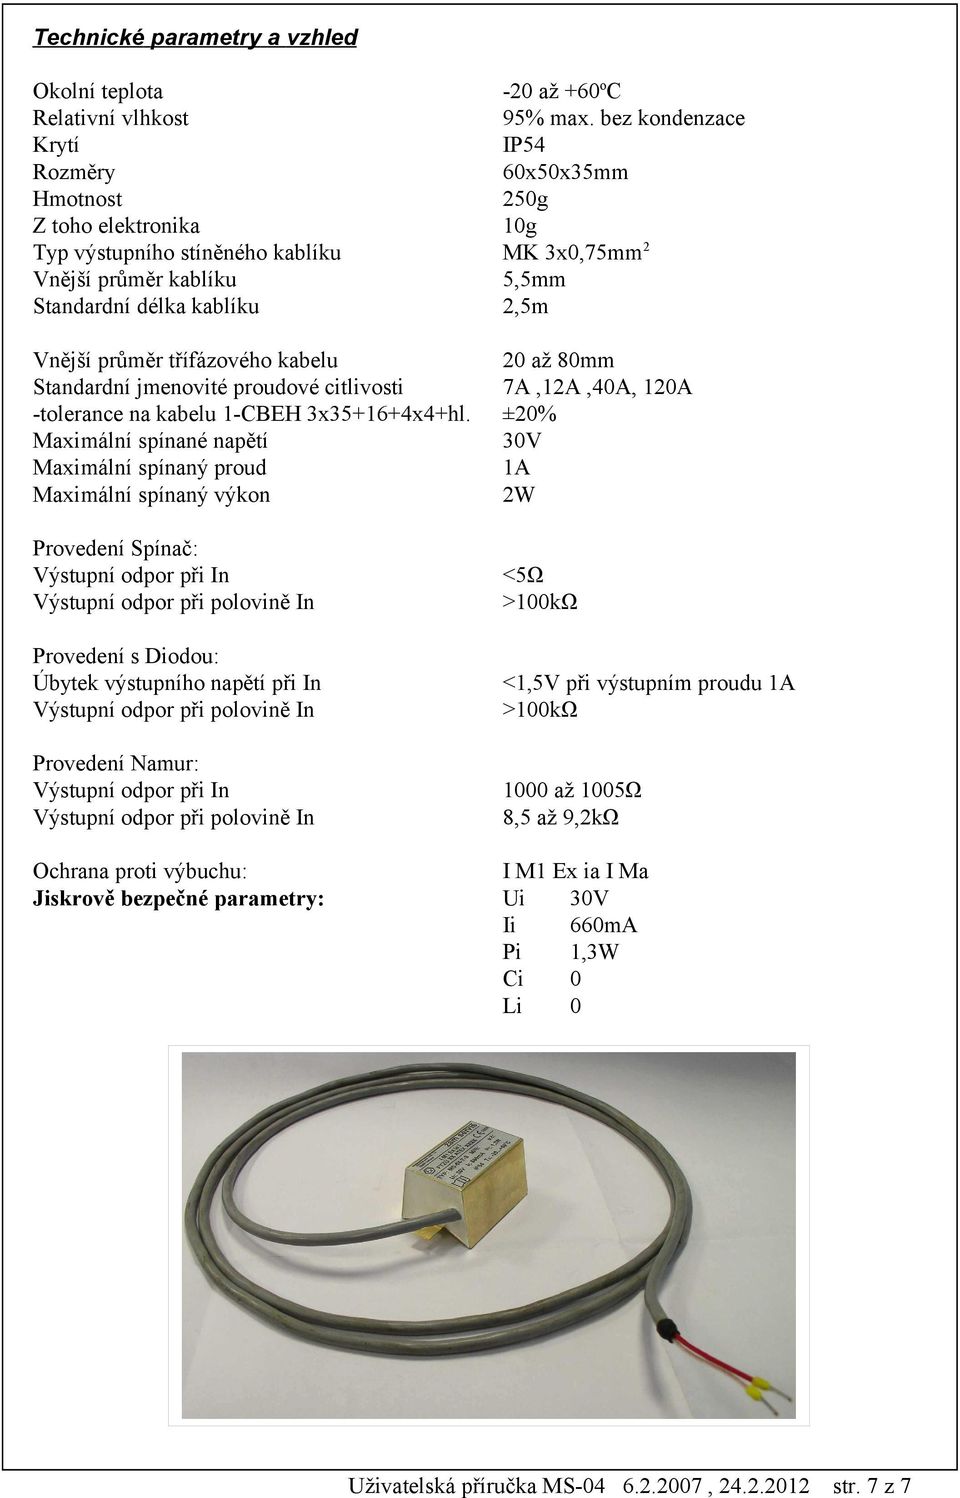 průměr třífázového kabelu 20 až 80mm Standardní jmenovité proudové citlivosti 7A,12A,40A, 120A -tolerance na kabelu 1-CBEH 3x35+16+4x4+hl.